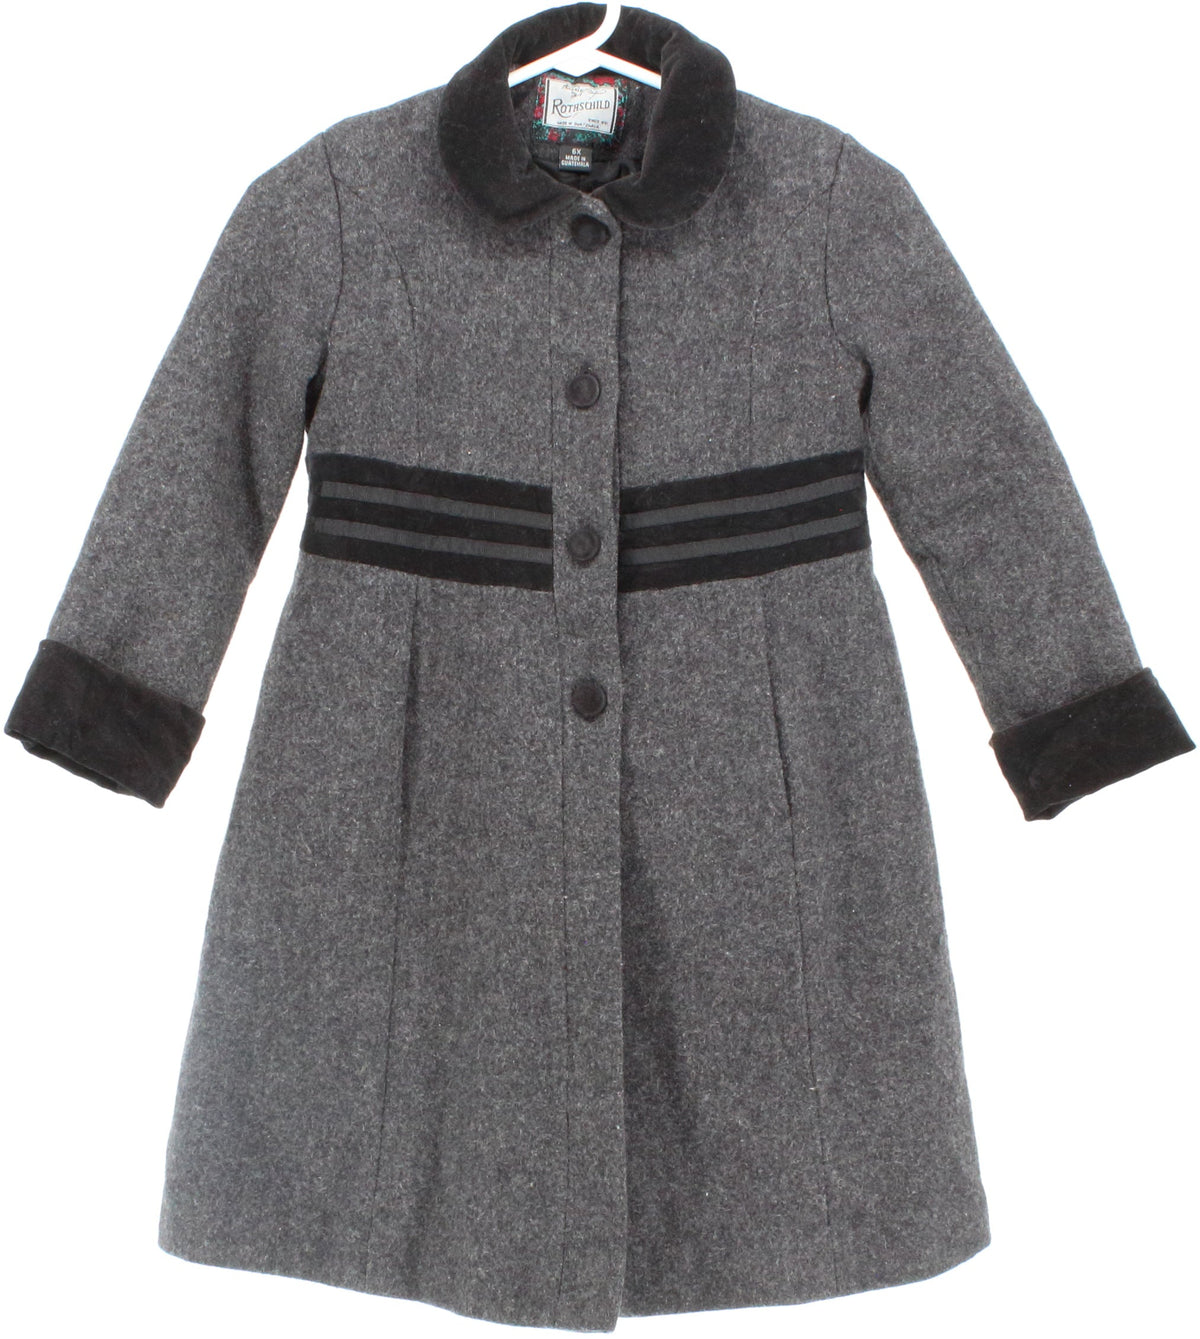 Rothschild Grey Children's Wool Coat